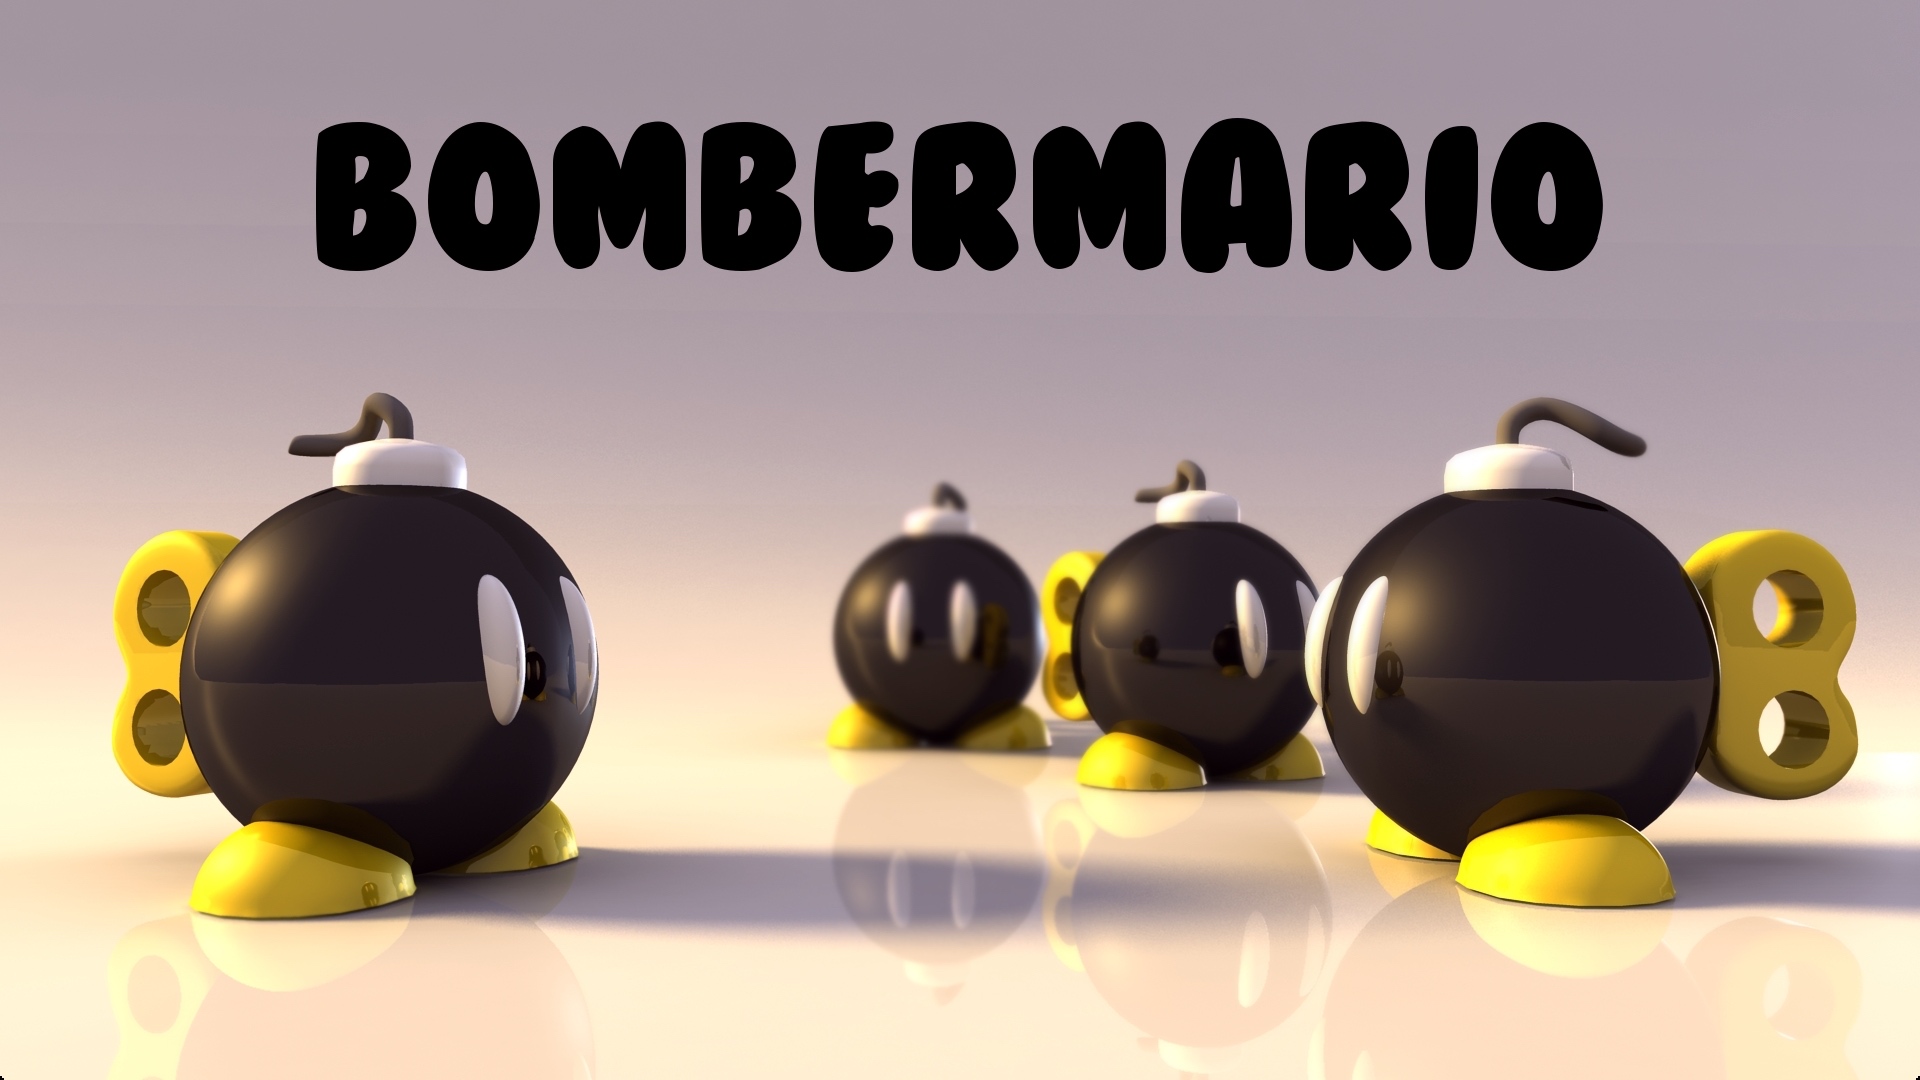 BomberMario